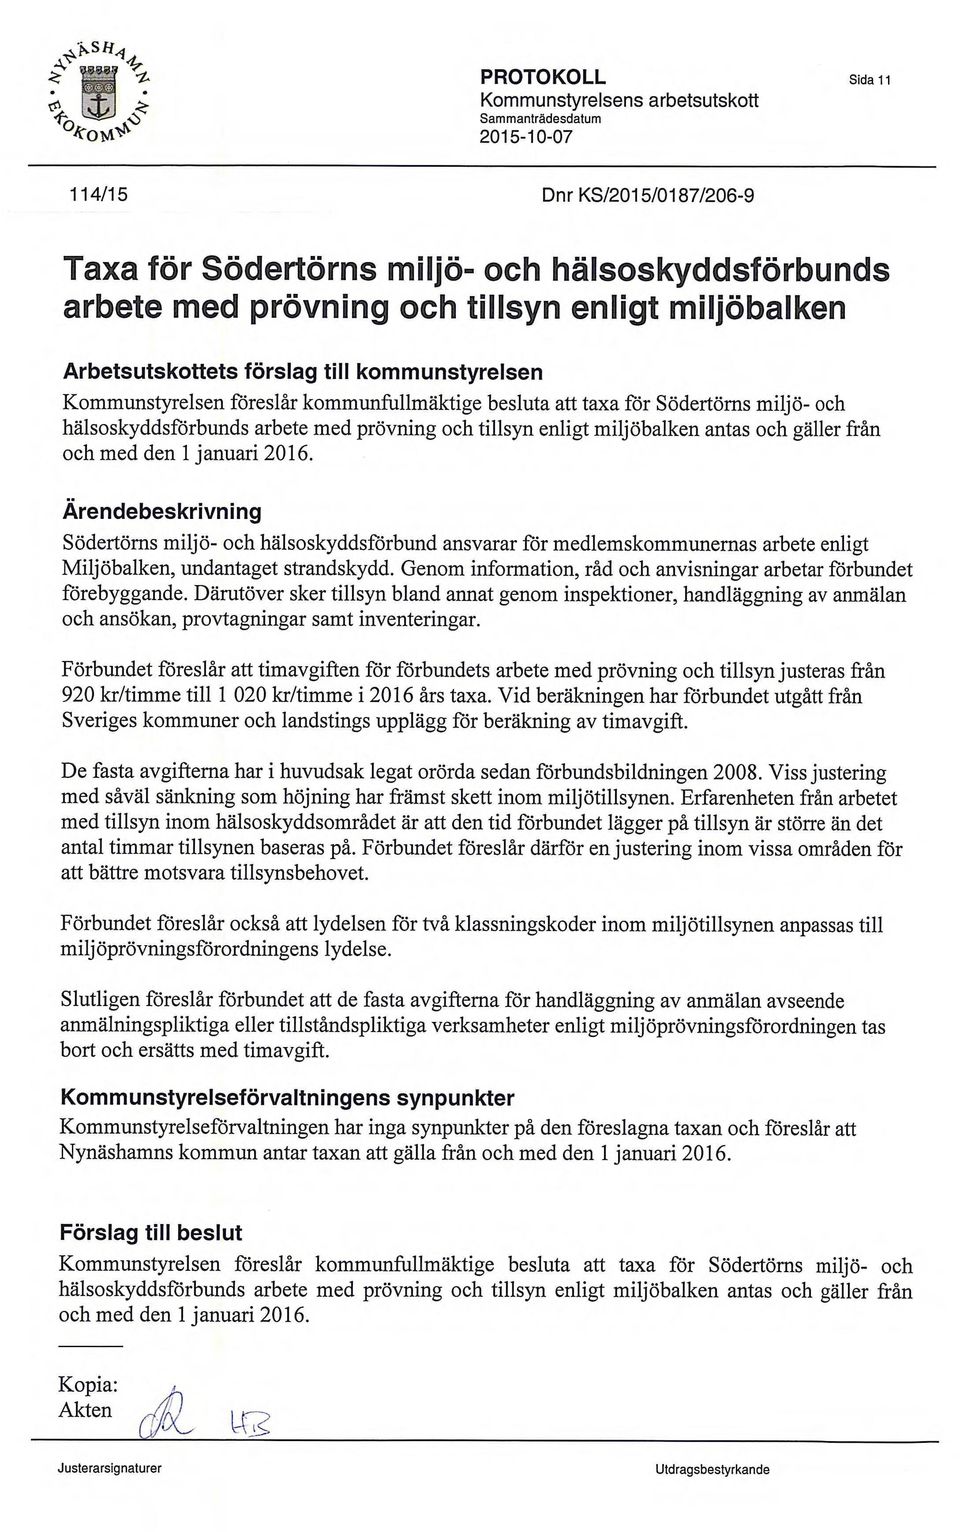 Arendebeskrivning Sodertorns och halsoskyddsforbund ansvarar fir medlemskommunernas arbete enligt MiljObalken, undantaget strandskydd.